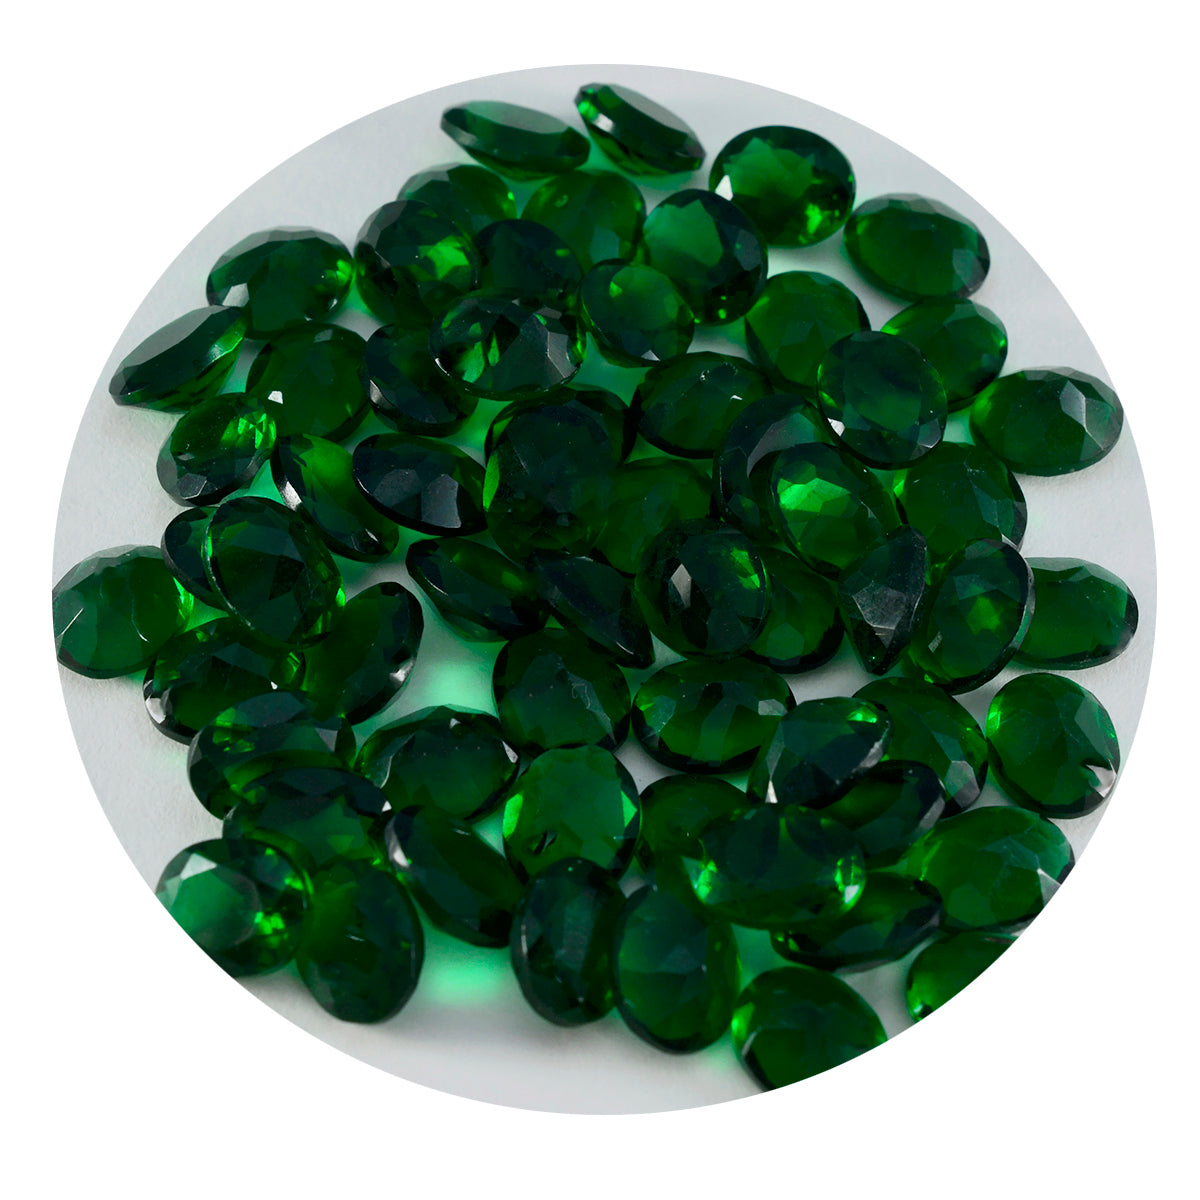 Riyogems 1 Stück grüner Smaragd, CZ, facettiert, 5 x 7 mm, ovale Form, attraktiver, hochwertiger loser Stein